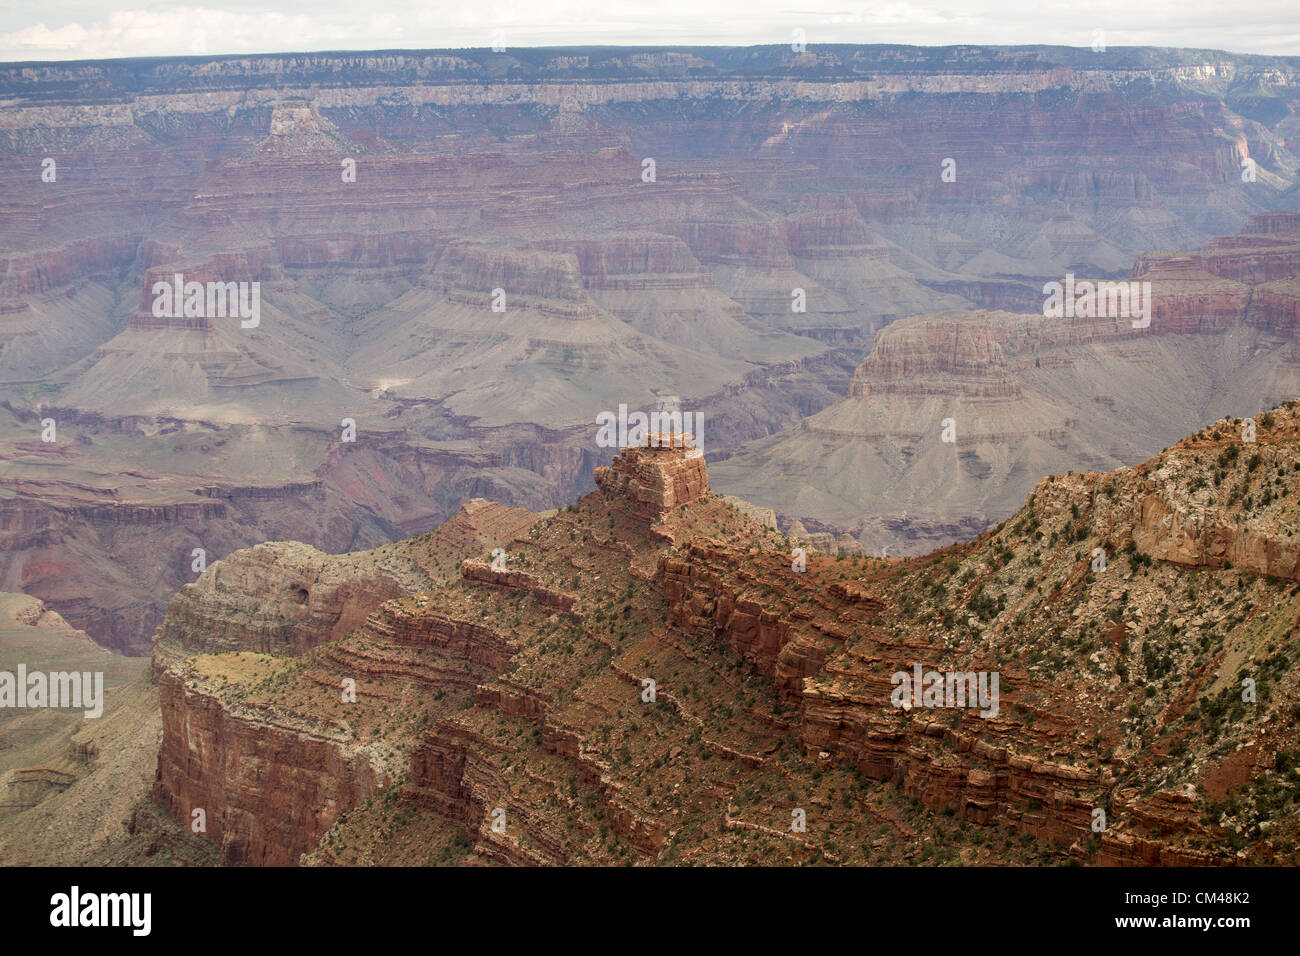 2 septembre 2012 - Temple City, CA, USA - Le Grand Canyon est vu de la Desert View Watchtower. Le Grand Canyon est un canyon aux flancs abrupts sculptés par le fleuve Colorado aux États-Unis dans l'état de l'Arizona. Elle est contenue à l'intérieur et géré par le Parc National du Grand Canyon, la tribu Hualapai Nation, et la tribu Havasupai. Le président Theodore Roosevelt a été un important partisan de la préservation de la zone du Grand Canyon, et il a rendu visite à de nombreuses occasions de chasser et profiter du paysage. Elle est considérée comme l'une des sept merveilles naturelles du monde..Le Grand Canyon est de 277 miles (446 km) de long Banque D'Images